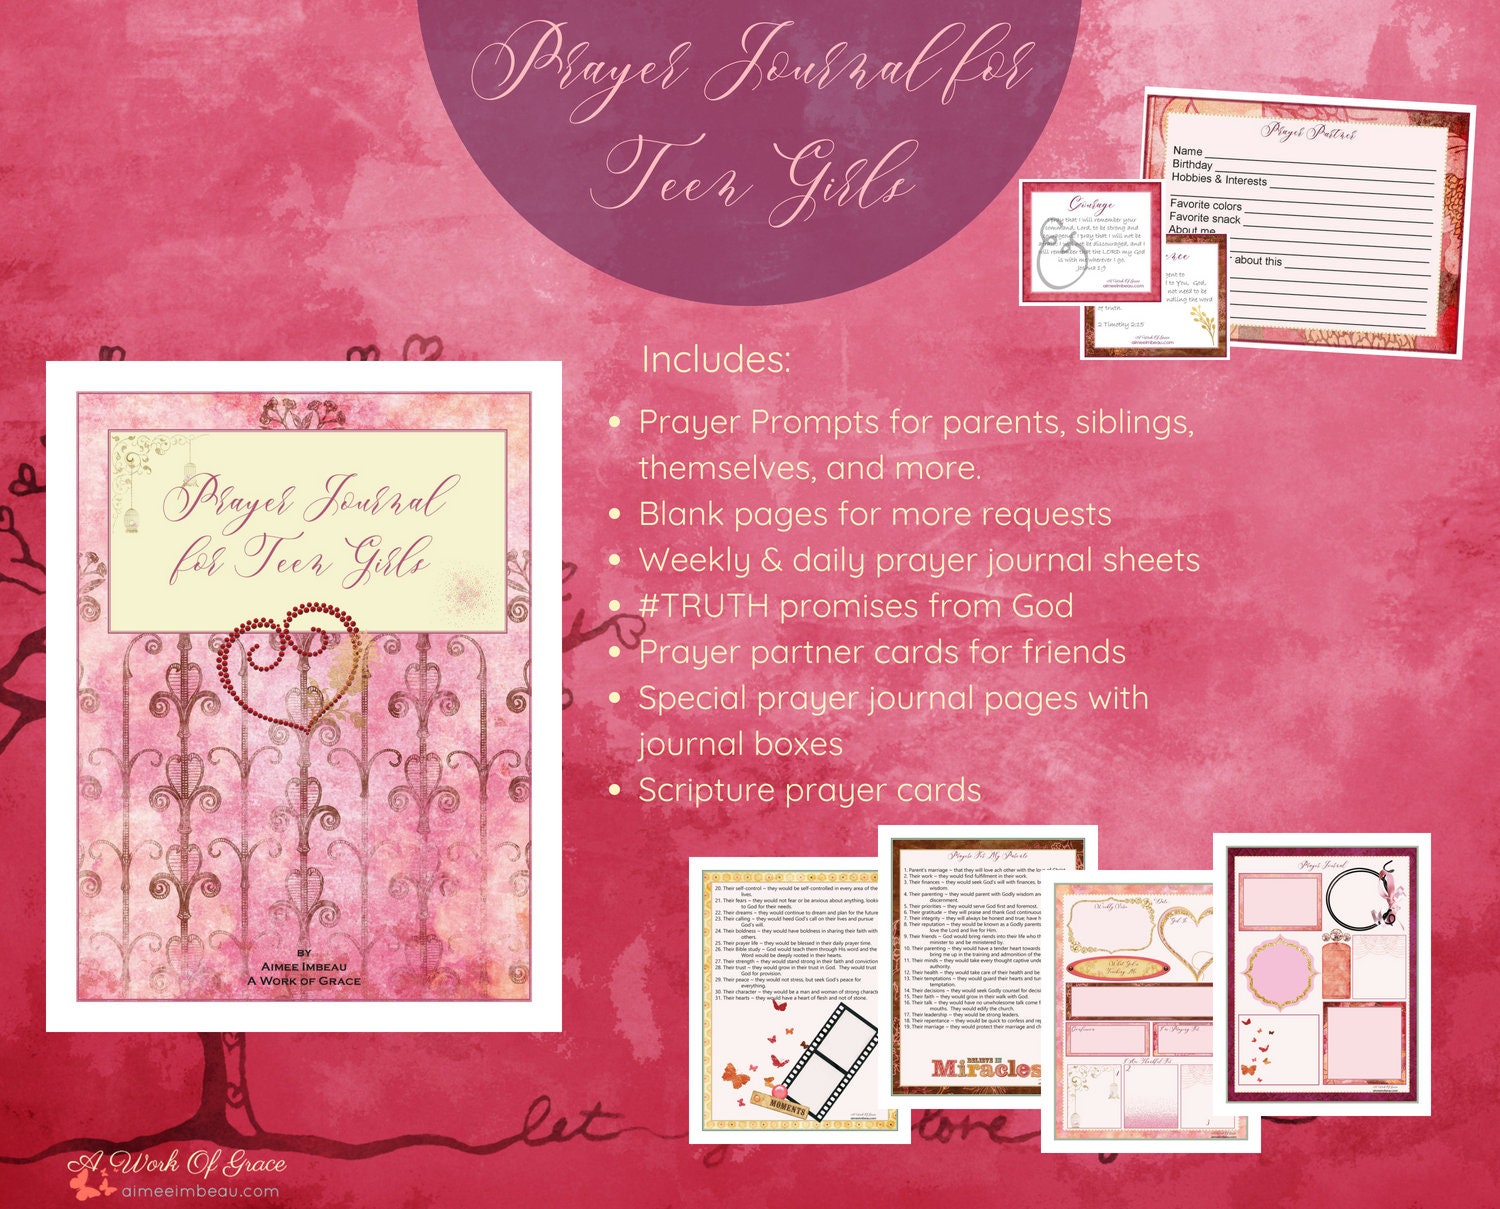 Prayer Journal Kit for Teen Girls 